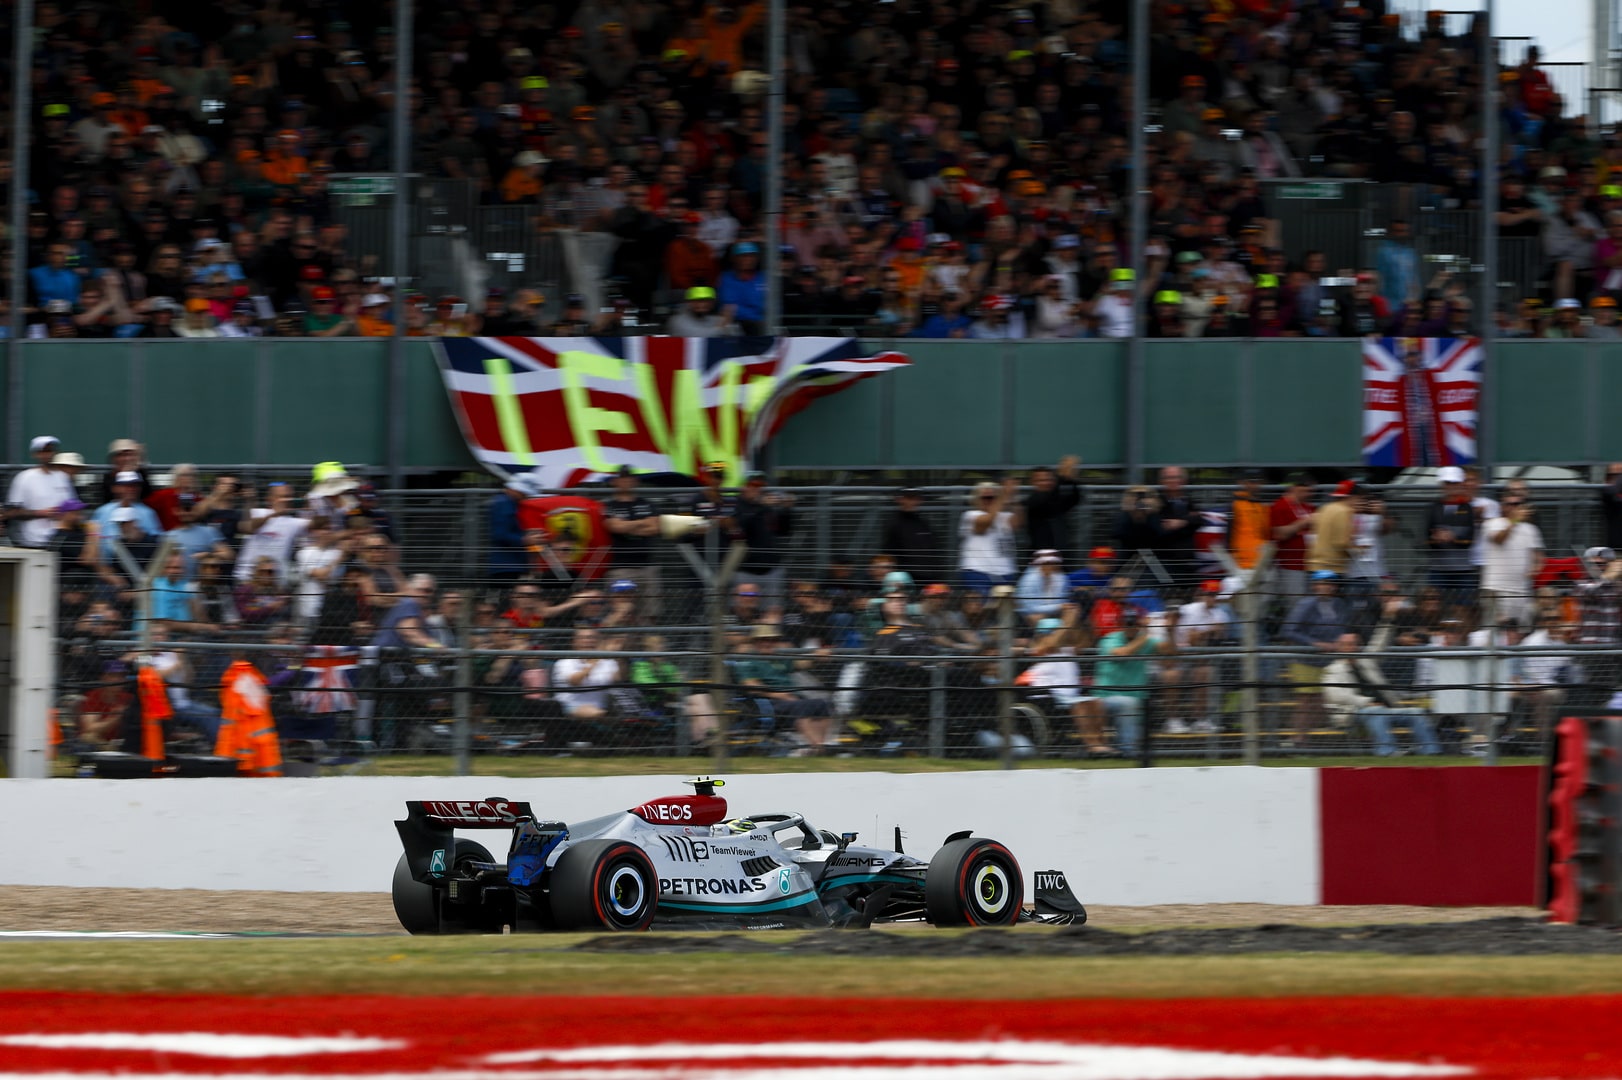 Lewis Hamilton qualifies in P5 in his home grand prix